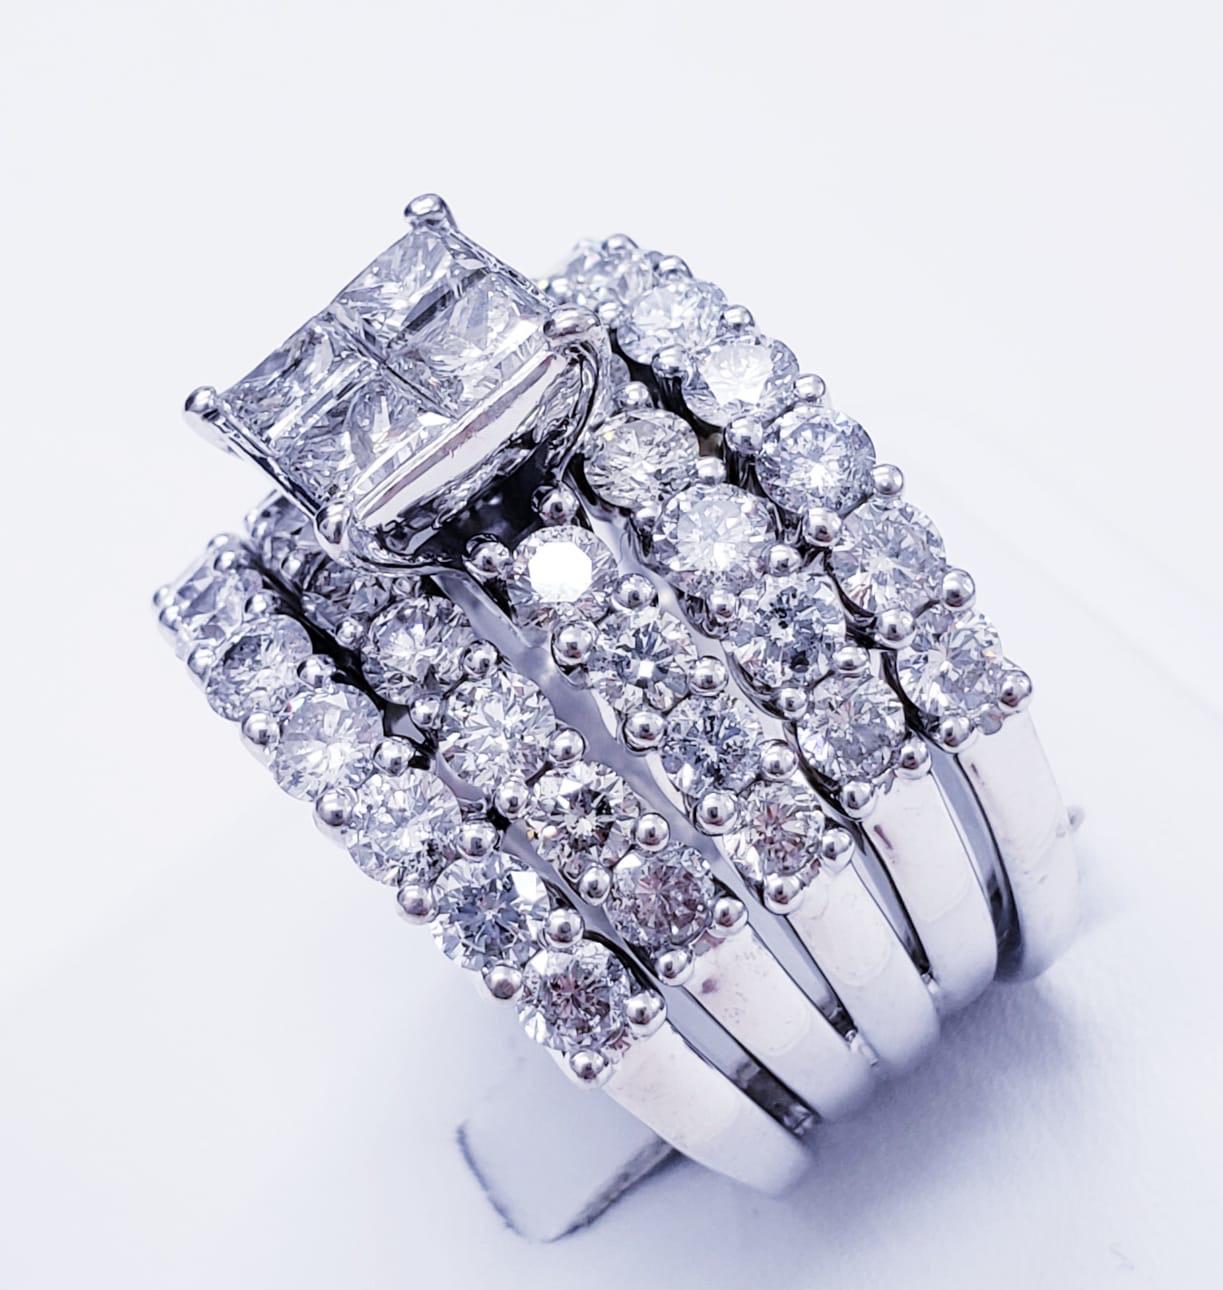 Moderner 9 Karat Diamanten Halbe Ewigkeit 6 Reihen Verlobungsring. Das Gesamtgewicht der Diamanten beträgt ca. 9 Karat. Der Ring ist eine Größe 8,5 und das Gewicht des Ringes ist 22,2 Gramm massivem 14k Weißgold. Der Ring misst 23,1 mm x 17,6 mm
Um